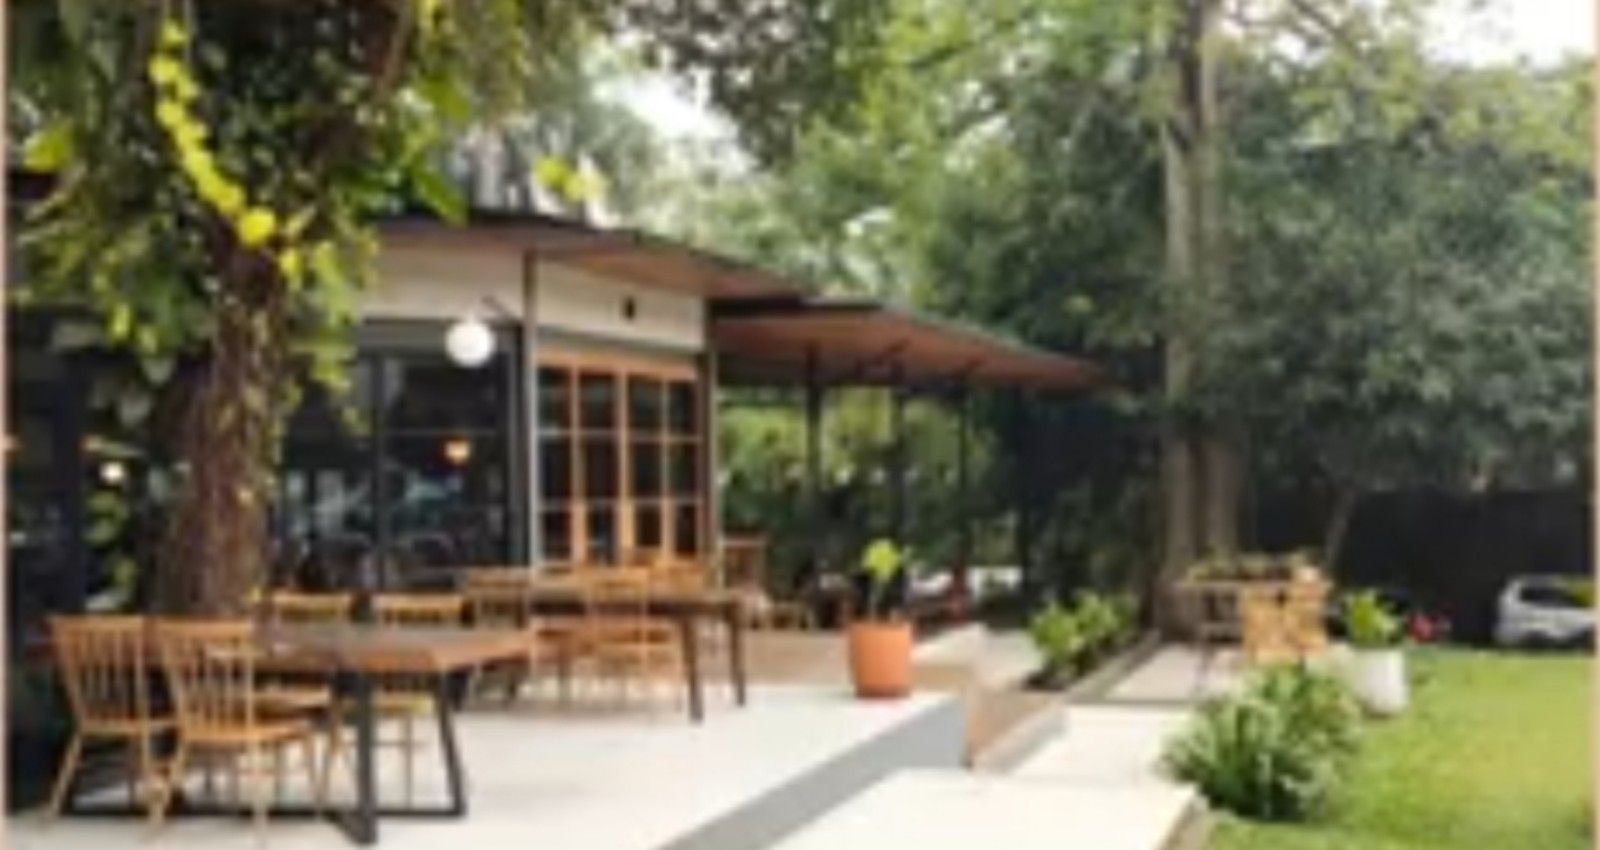 Lot 9 Resto, tempat kuliner asri cozy di Pondok Aren Tangerang Selatan Banten/tangkapan layar youtube/channel Mulai Yuk 